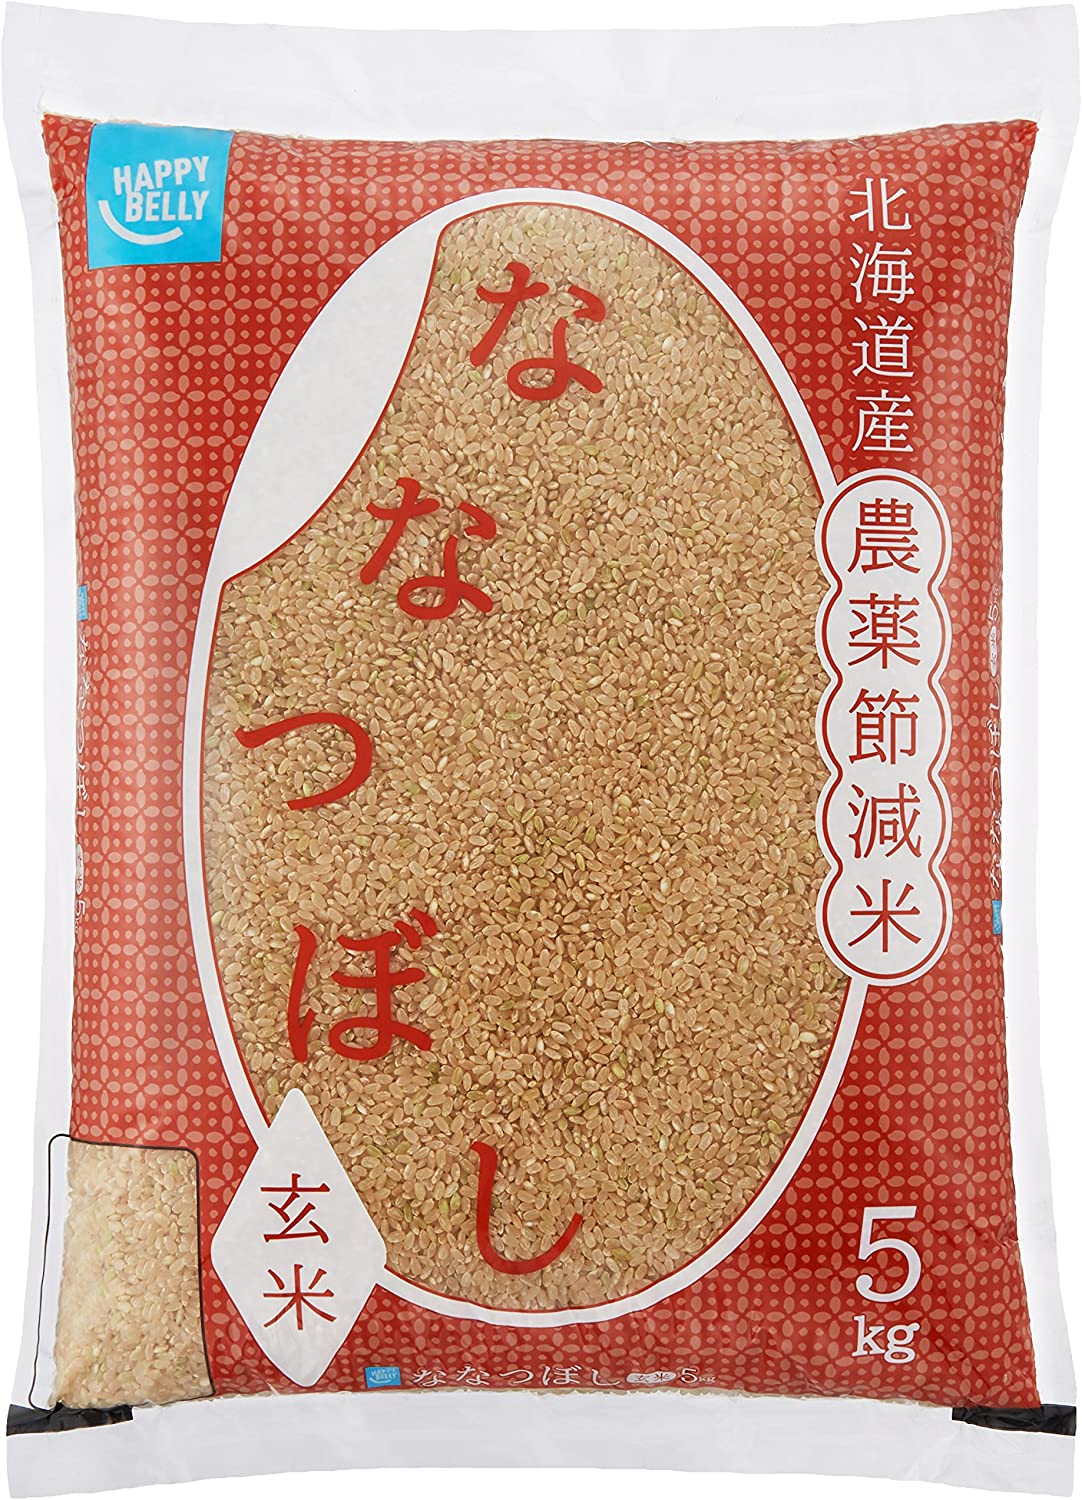 とっておきし福袋 Happy ABO Belly 5kg 農薬節減米 ななつぼし 北海道産 玄米 玄米